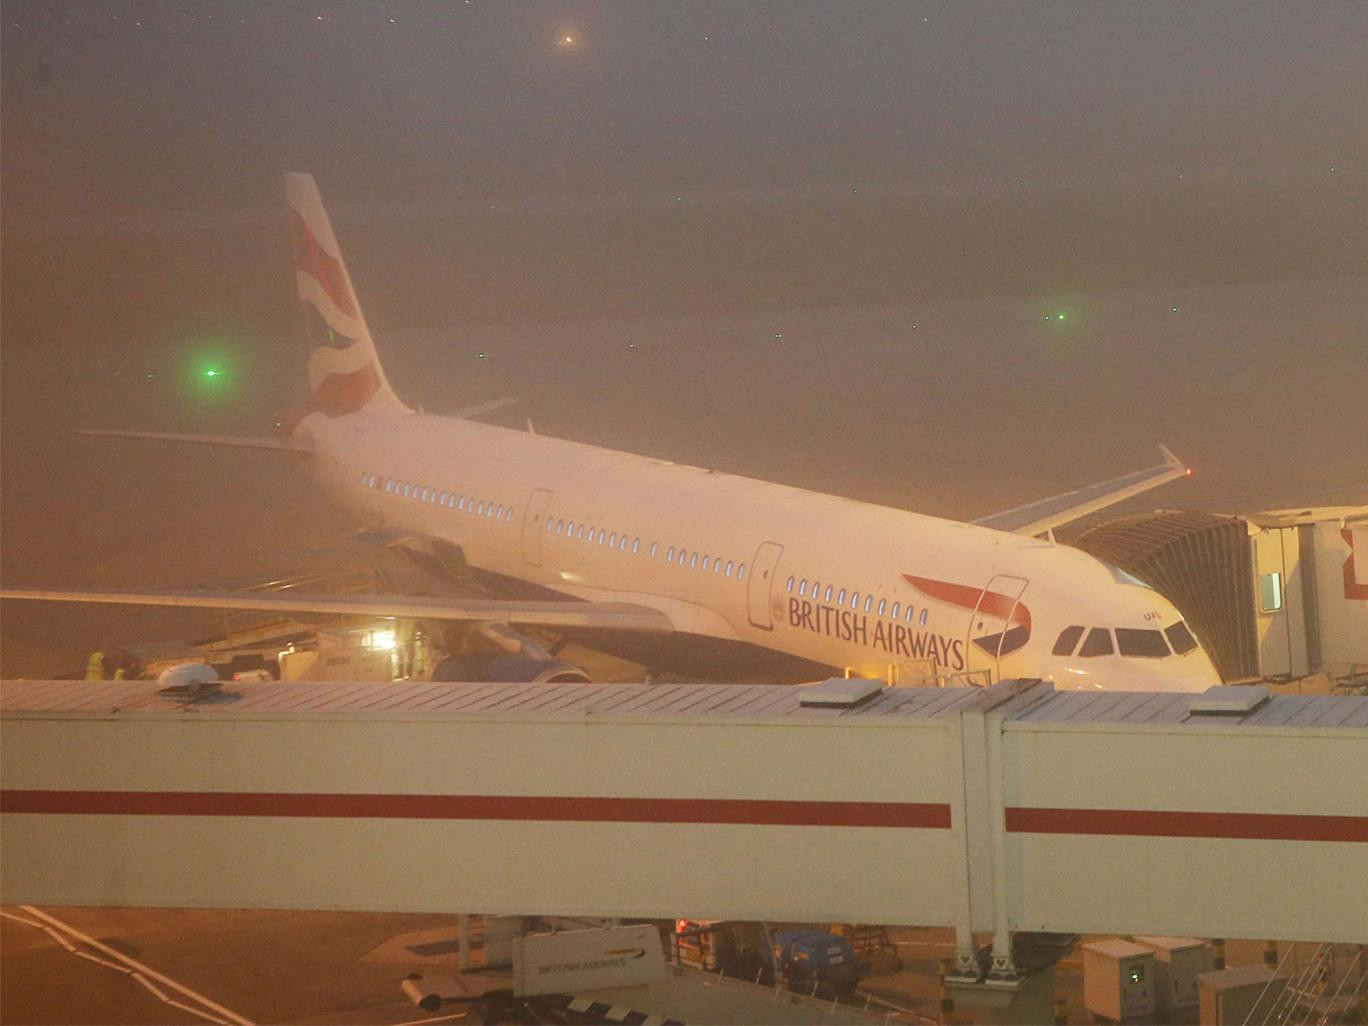 Πυκνή ομίχλη «κατάπιε» τα μεγάλα ευρωπαϊκά αεροδρόμια – Εκατοντάδες ακυρώσεις και καθυστερήσεις [ΦΩΤΟ]